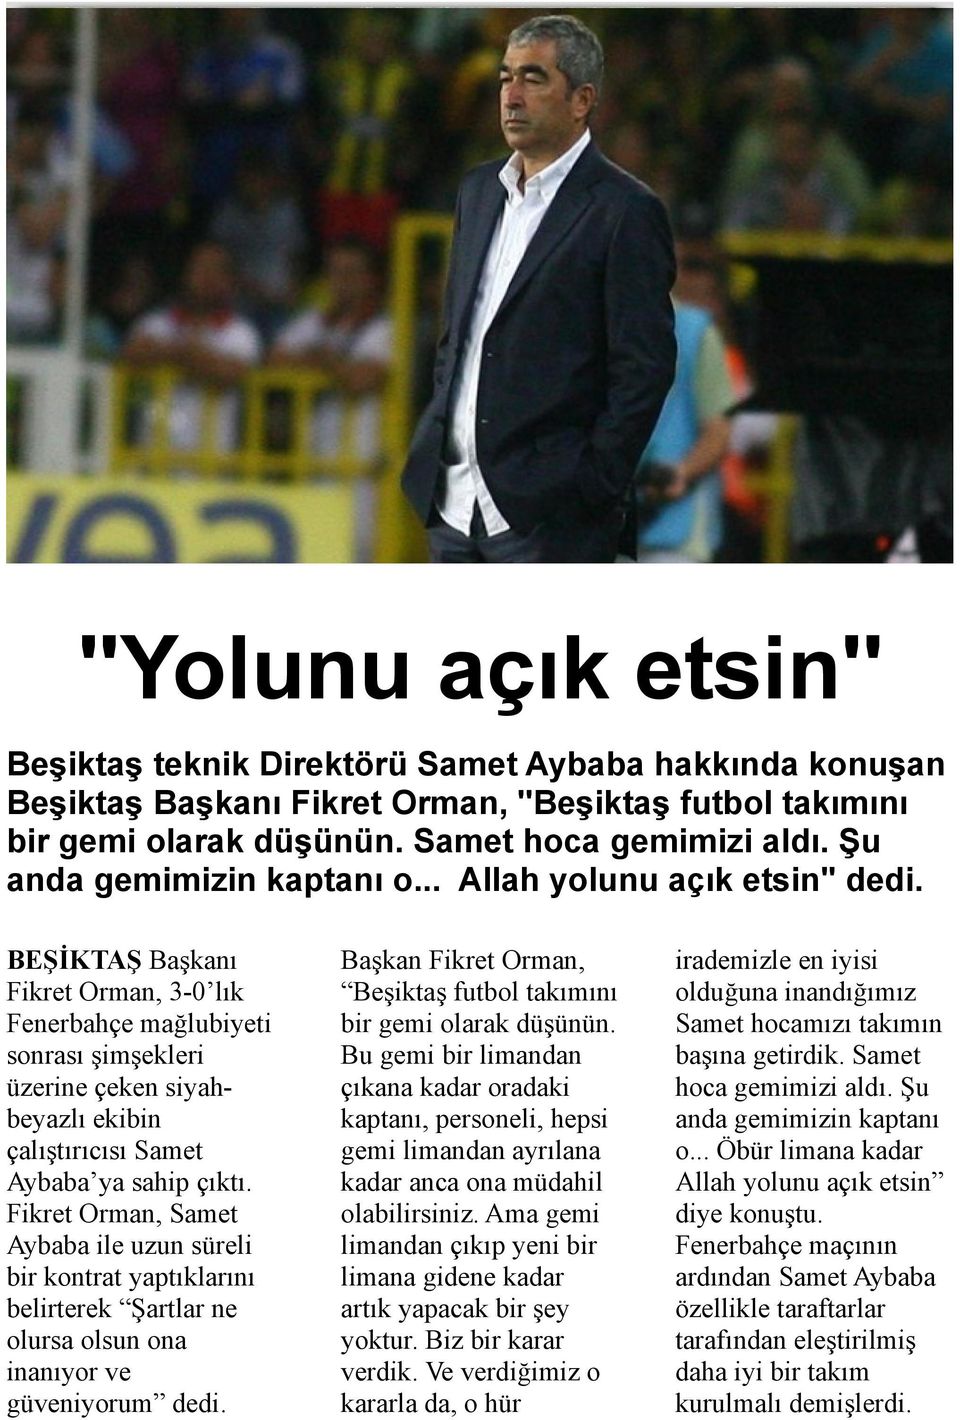 BEŞİKTAŞ Başkanı Fikret Orman, 3-0 lık Fenerbahçe mağlubiyeti sonrası şimşekleri üzerine çeken siyahbeyazlı ekibin çalıştırıcısı Samet Aybaba ya sahip çıktı.